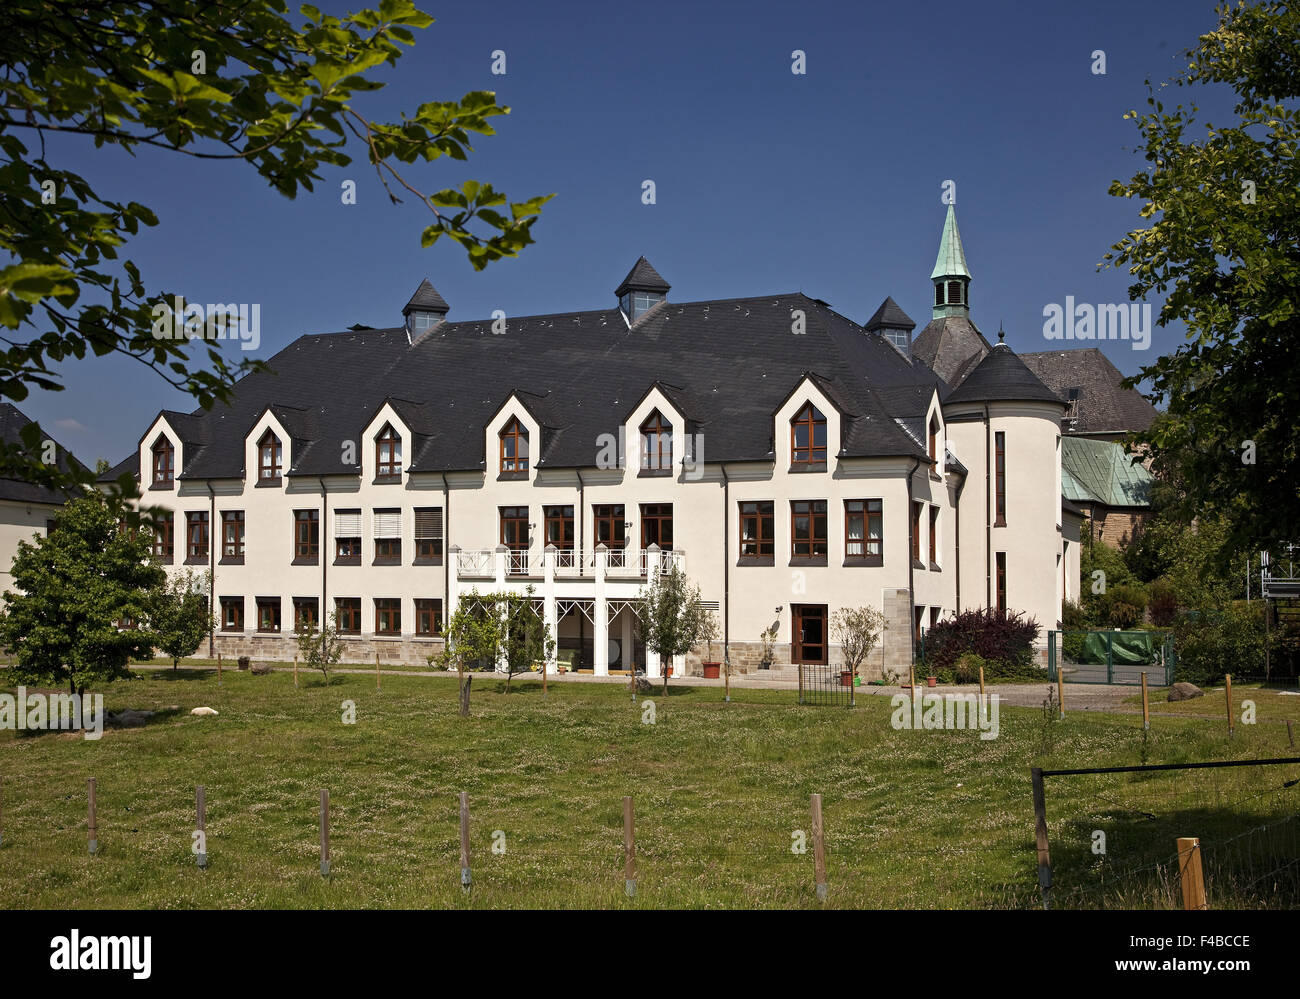 Monastery Stiepel, Bochum, Germany. Stock Photo